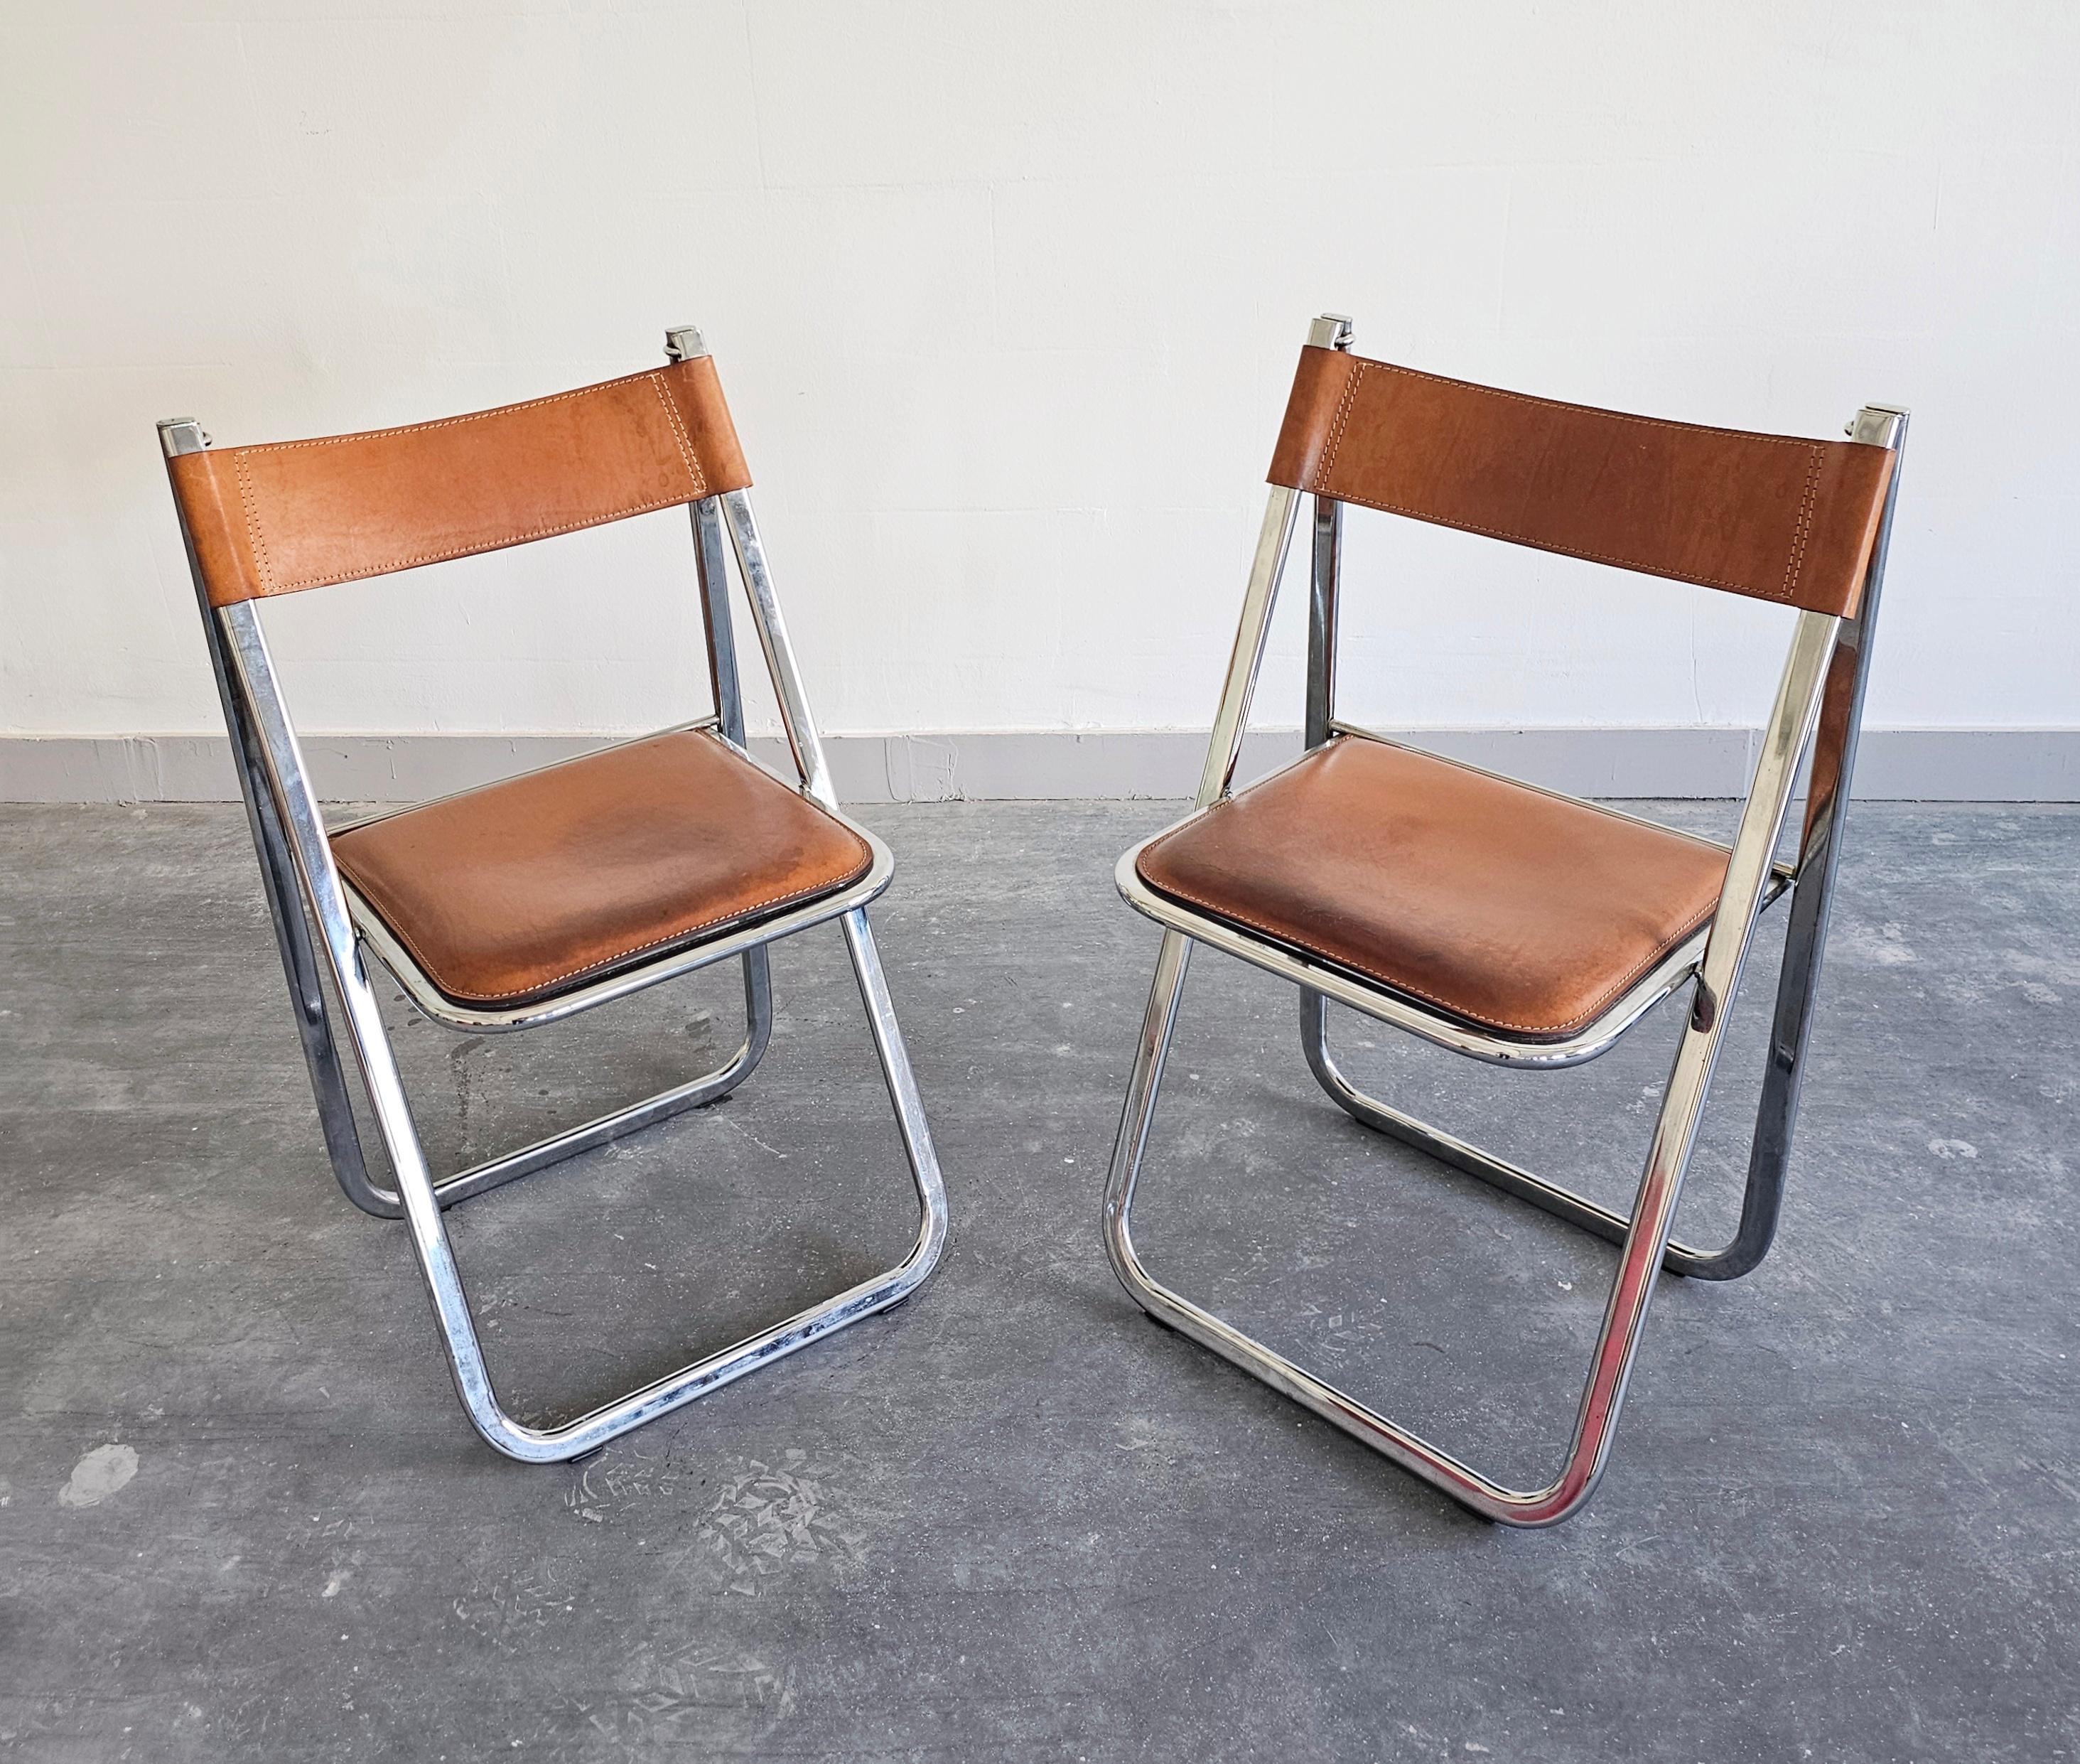 Vous trouverez dans cette annonce une paire de chaises pliantes postmodernes exceptionnellement rares fabriquées par Arrben. Ils sont dotés d'un cadre en acier chromé et d'une assise et d'un dossier en cuir cognac. Fabriqué en Italie dans les années